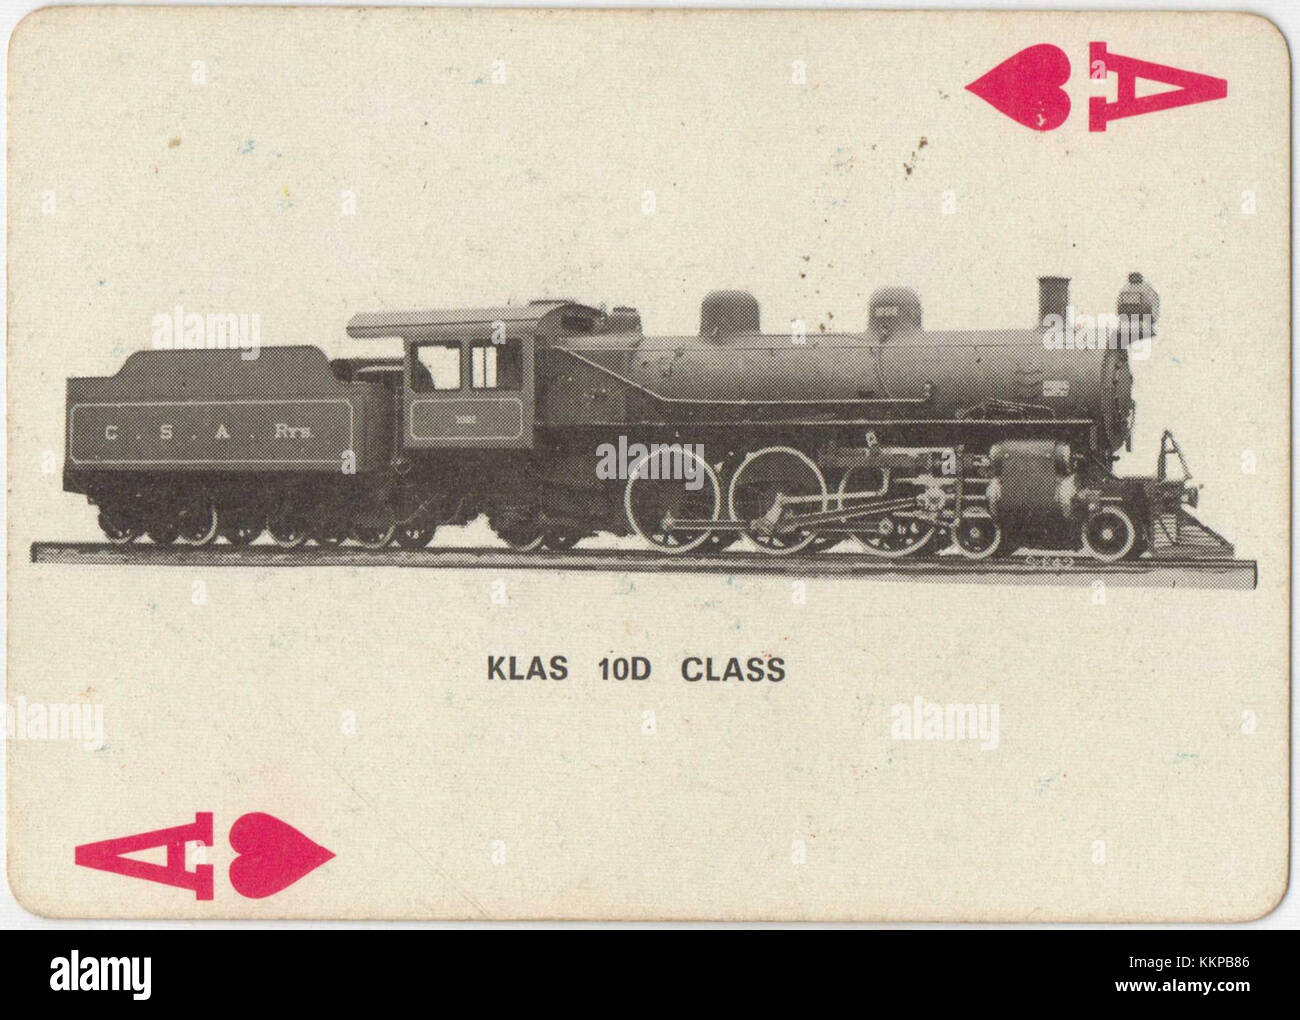 Class 10D 779 (4 6 2) CSAR 1002 Playing Cards Stock Photo